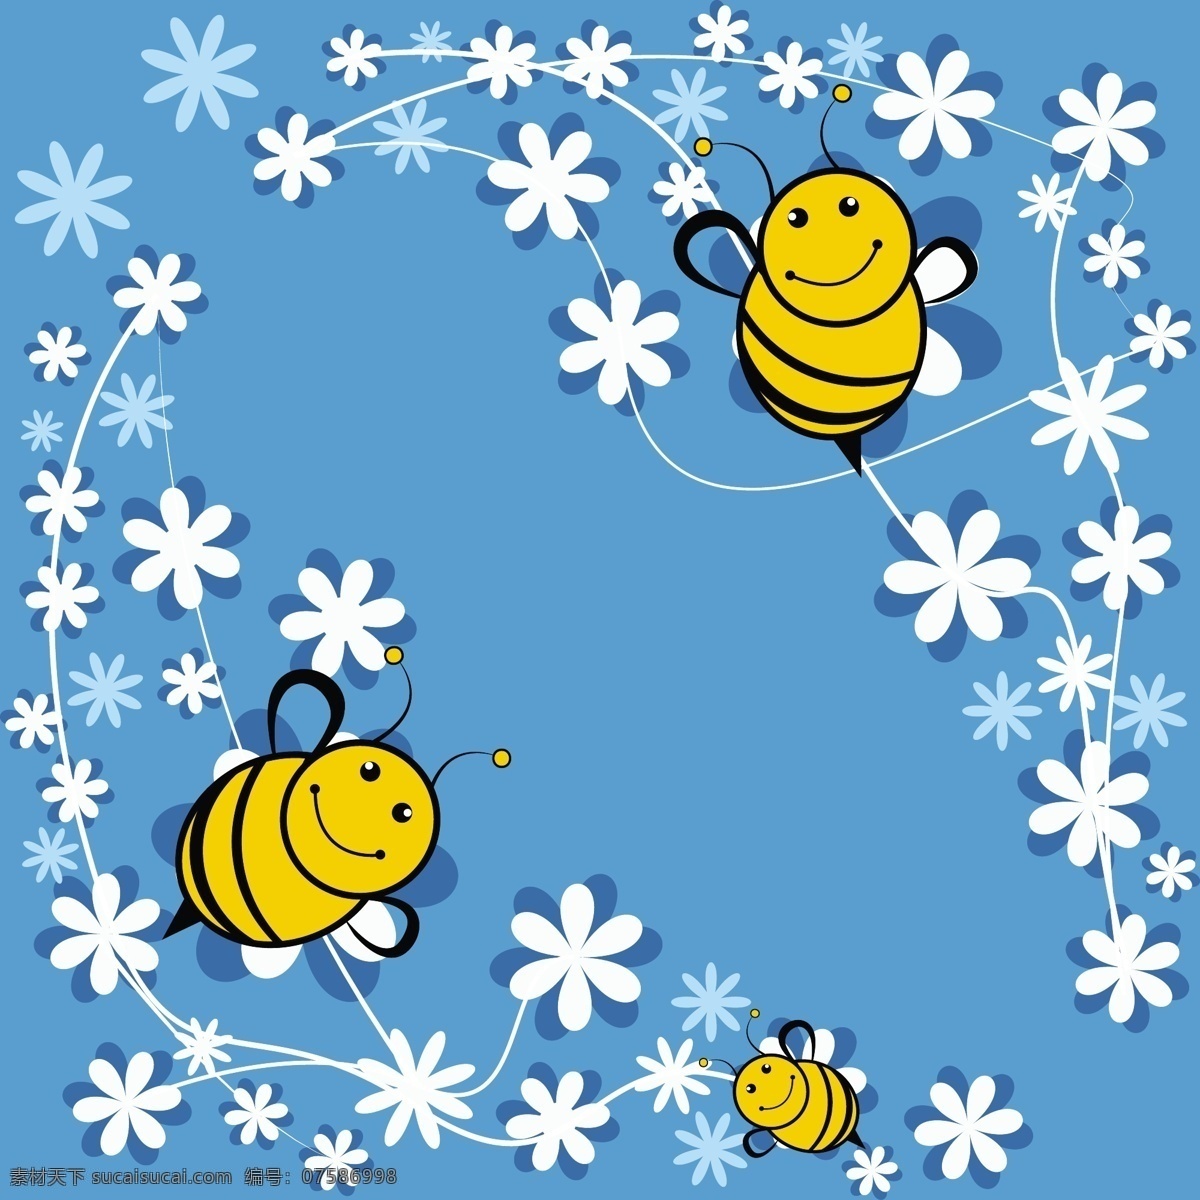 可爱 蜜蜂 蓝色 背景 苍蝇 可爱的蜜蜂 花 卡通 蜜蜂卡通 蜜蜂矢量 壁纸 蜜蜂背景 蜜蜂壁纸 臭虫背景 臭虫壁纸 花园 春天 花园蜂